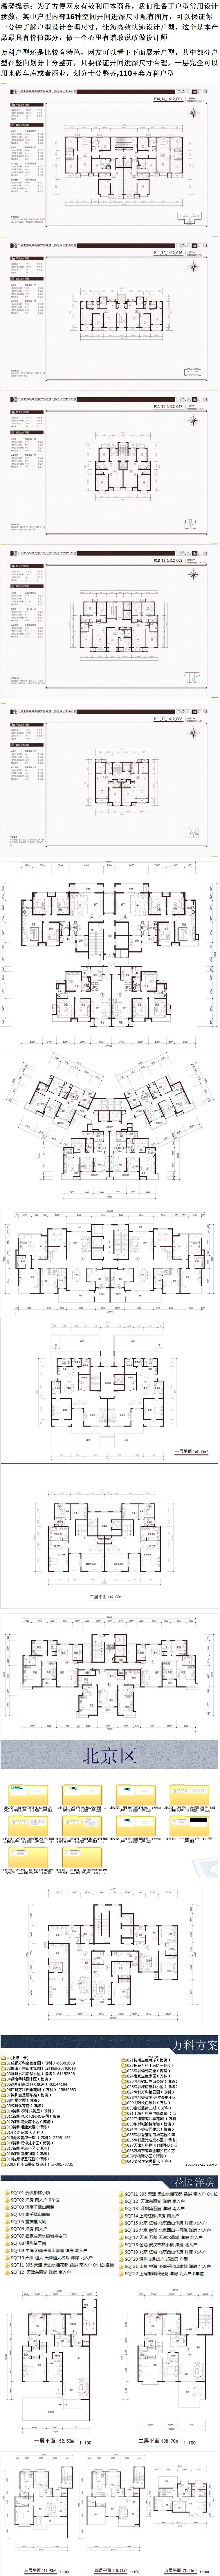 住宅户型图纸 多层小高层花园洋房公寓复式跃层楼CAD设计素材方案 第5张